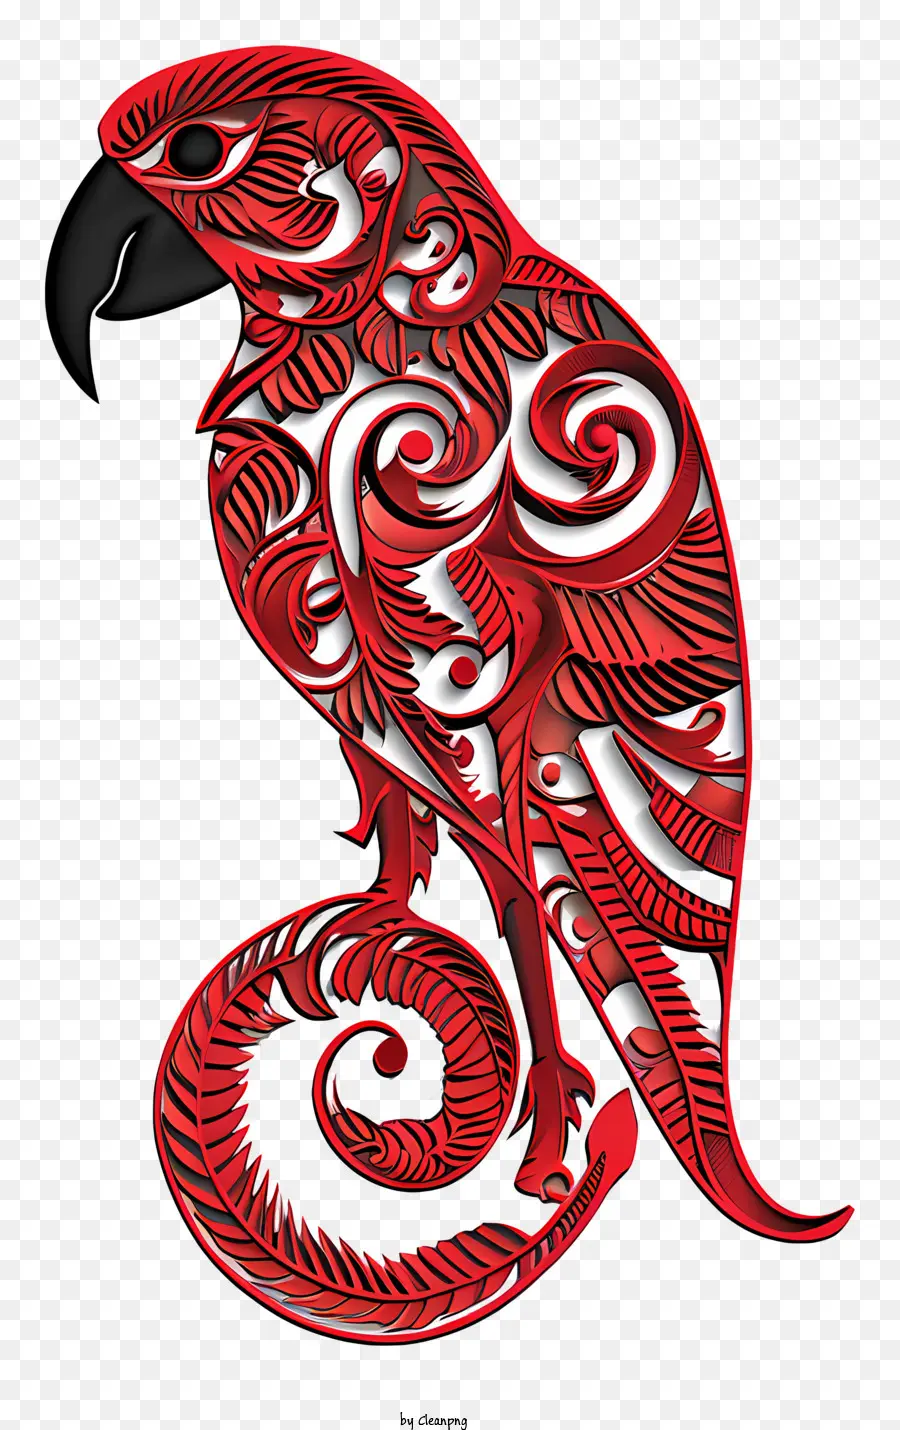 giorno d'attesa - Pappagallo rosso con design intricato, vista profilo